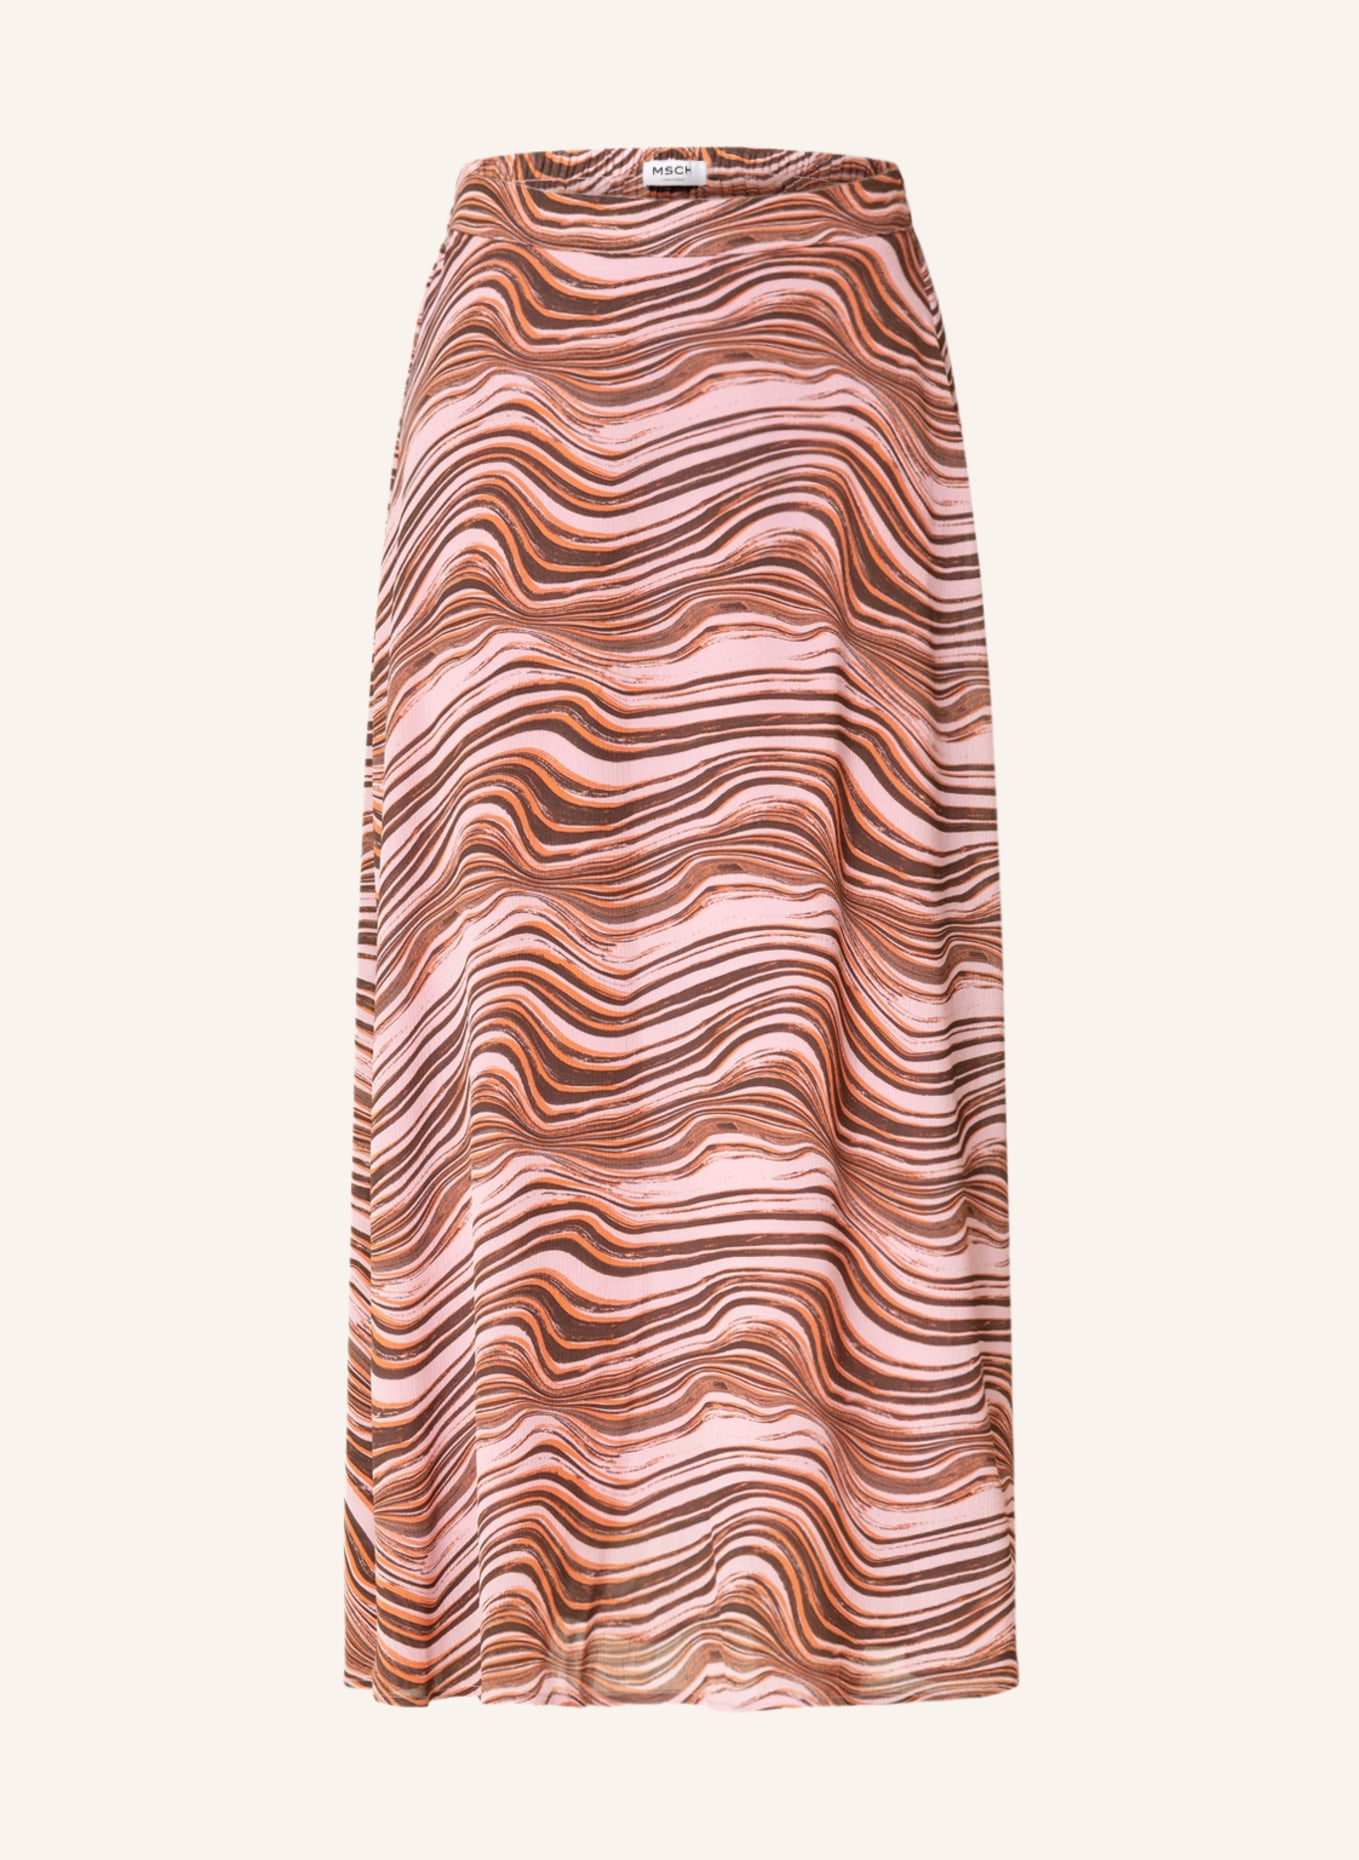 MSCH COPENHAGEN Skirt, Color: PINK/ BROWN/ ORANGE (Image 1)